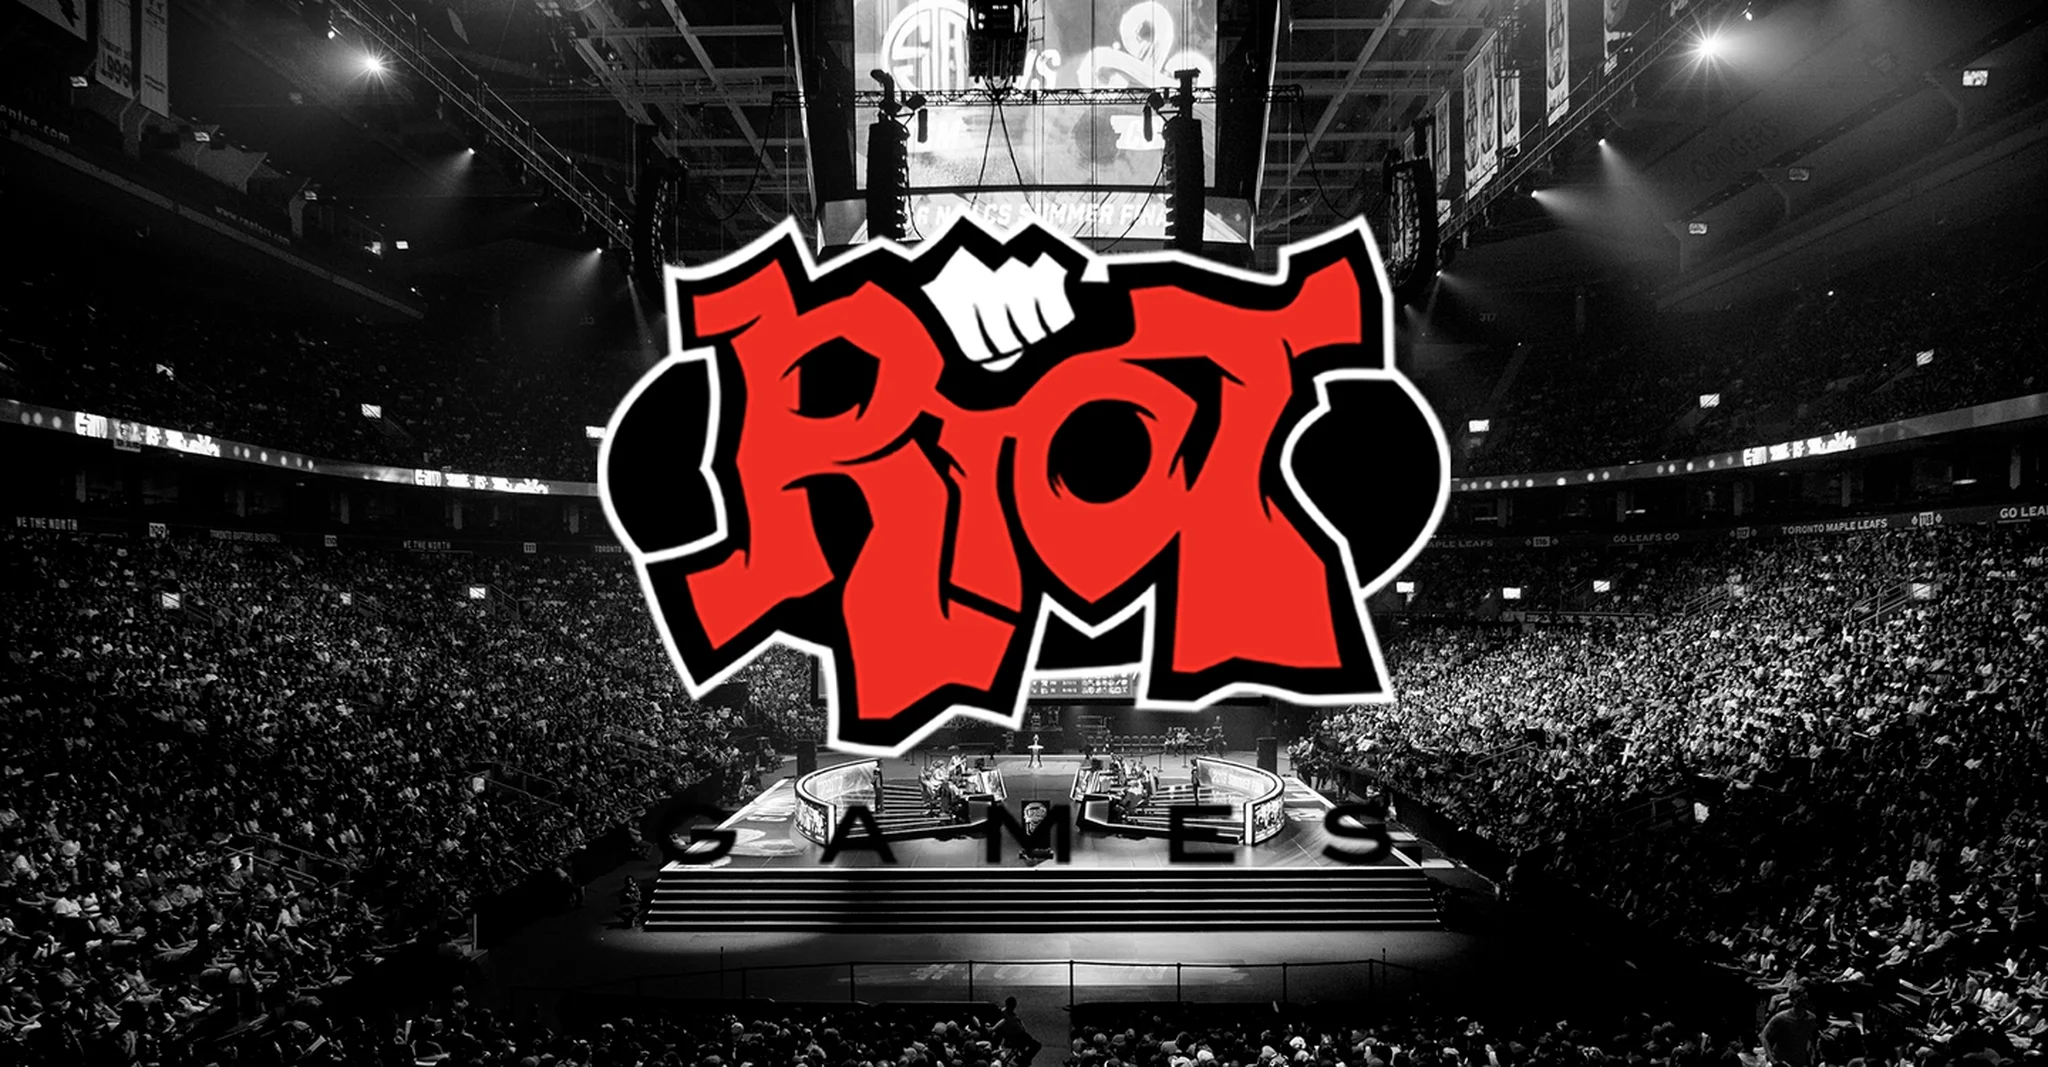 Riot поставила ультиматум команде по League of Legends: «увольте расиста или будут проблемы» - фото 1